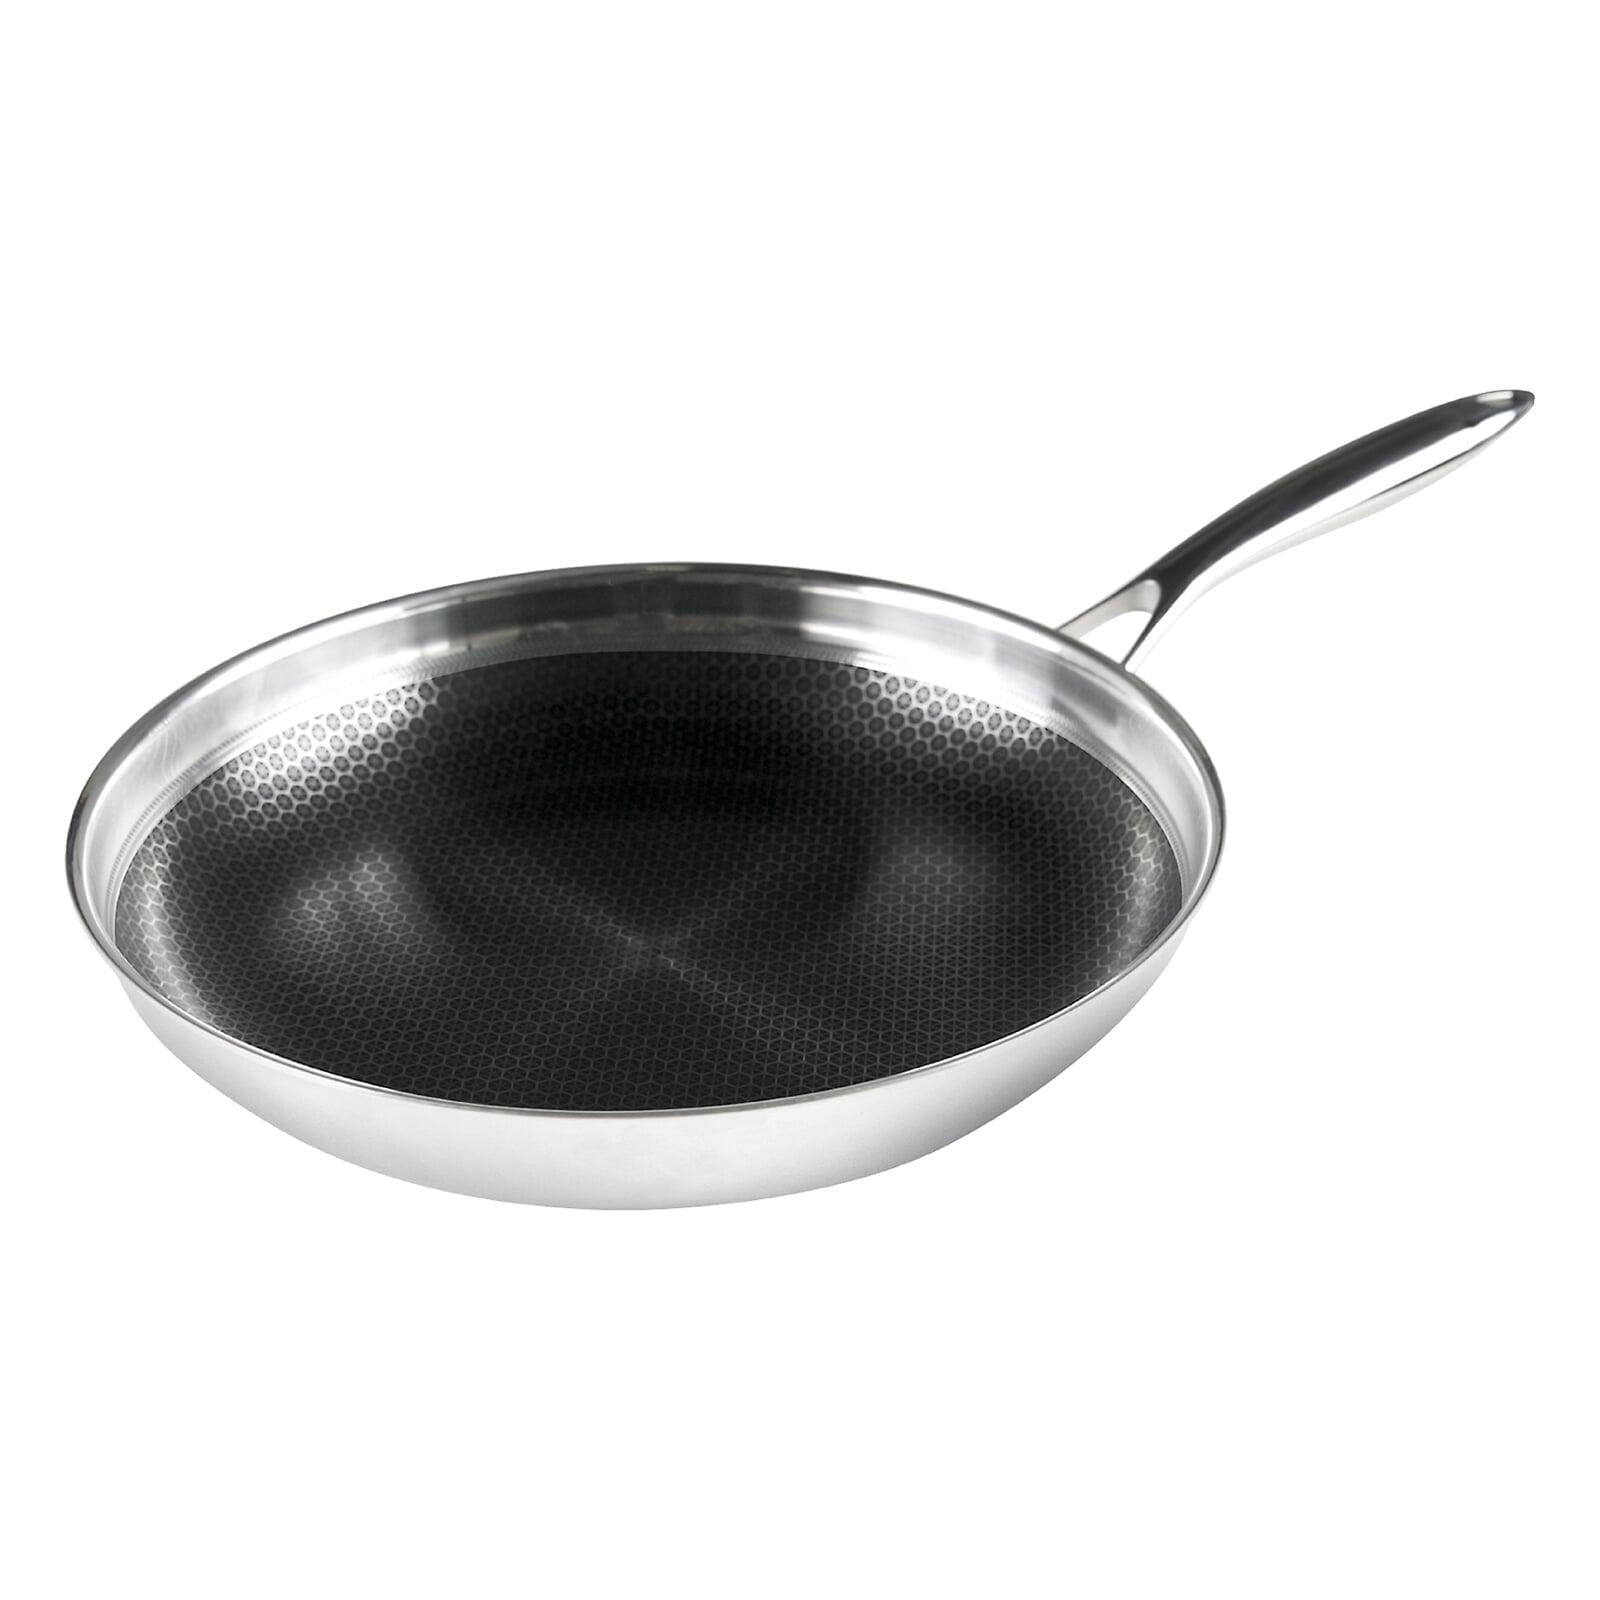 Chef Burke Quick Release Fry Pan, 12 1/2 Inch Diameter